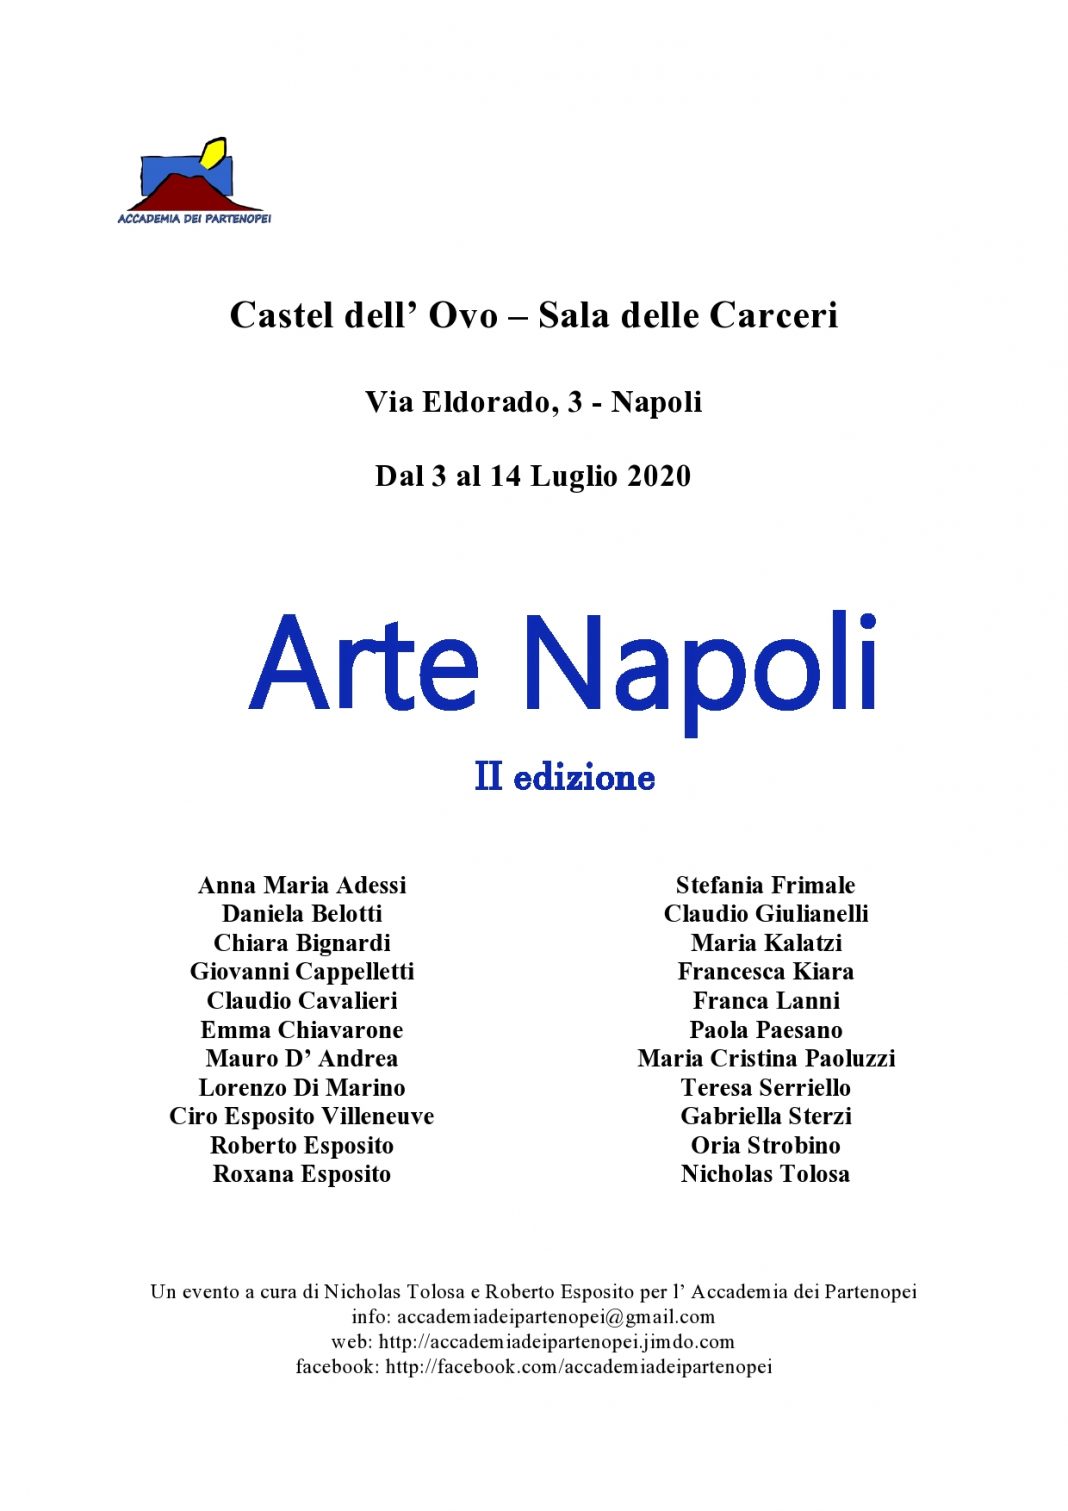 Arte Napoli – II edizionehttps://www.exibart.com/repository/media/formidable/11/locandina-Arte-Napoli-II-edizione-page0001-1-1068x1511.jpg